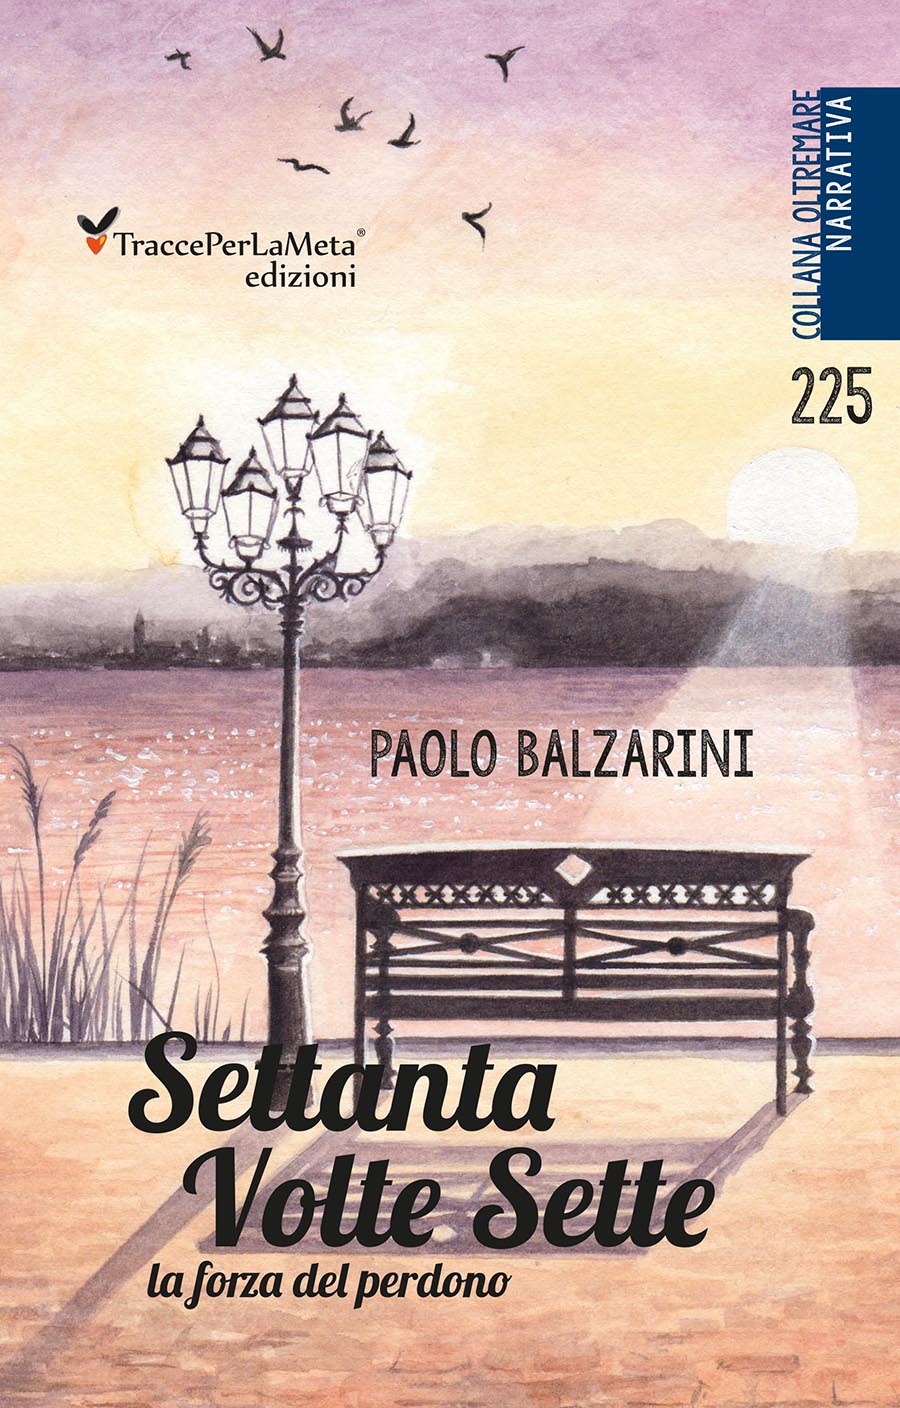 Un messaggio prezioso, un libro che non si dimentica; esce “Settanta volte sette” di Paolo Balzarini